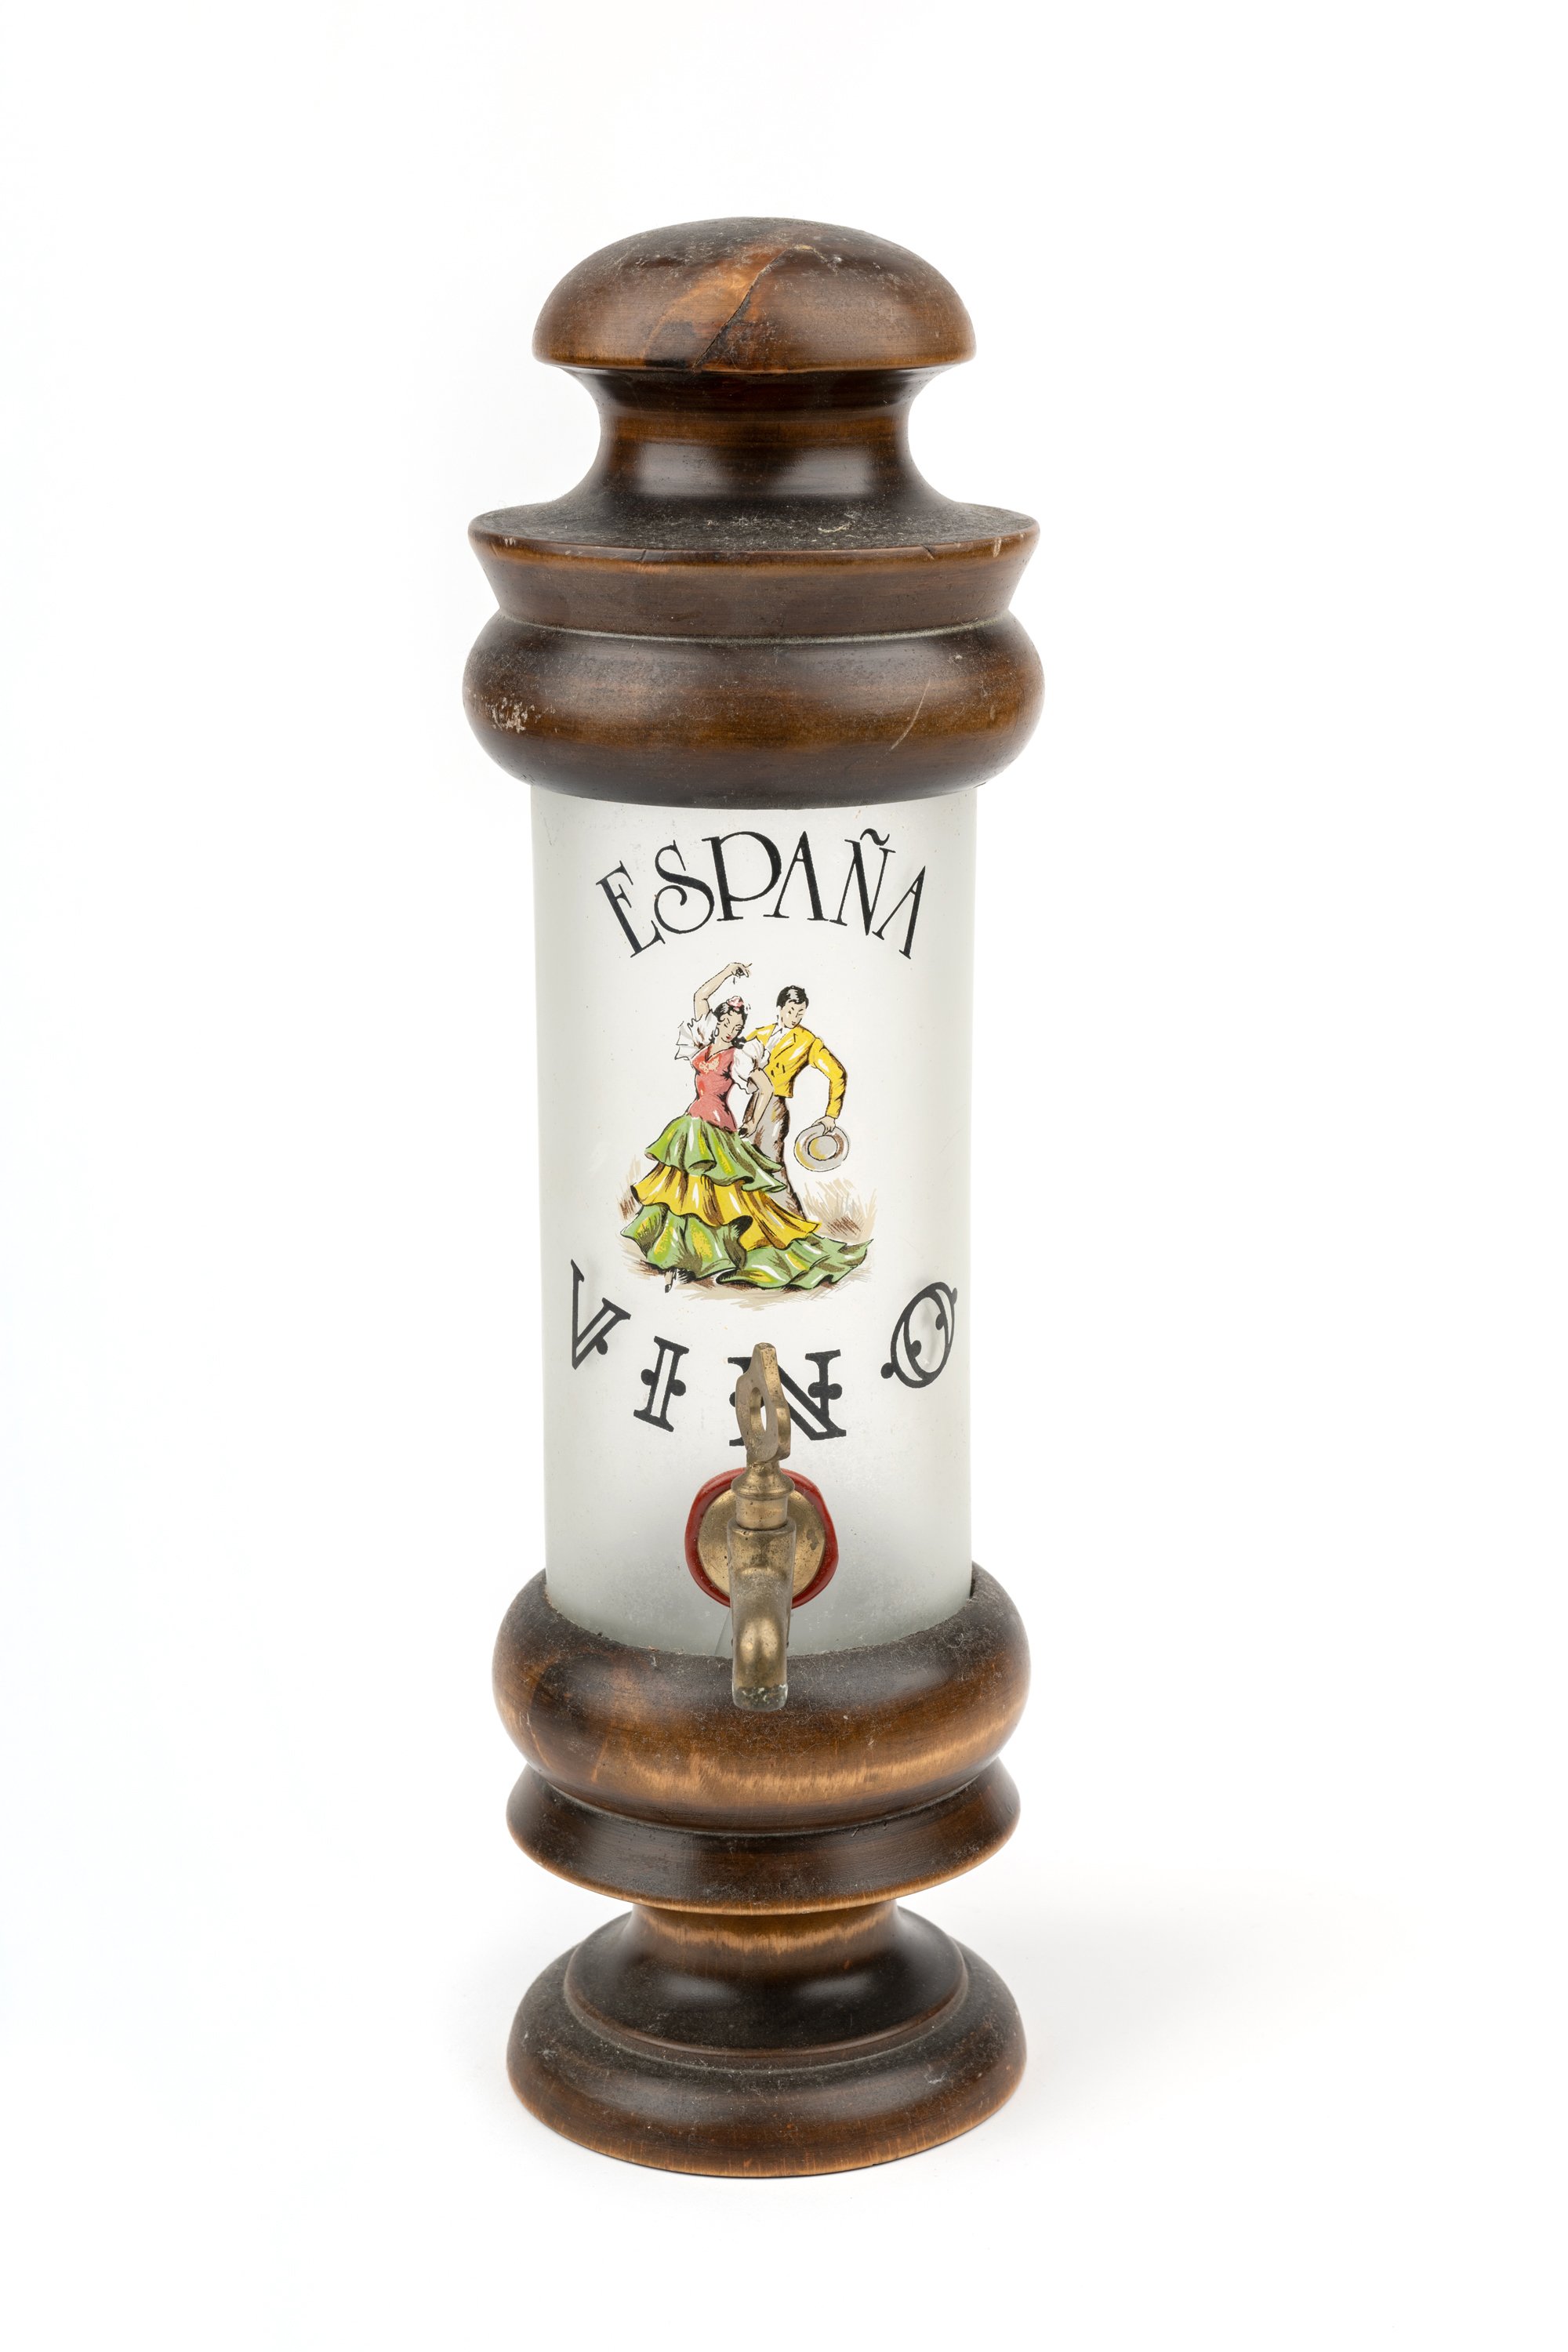 Behälter mit Zapfhahn "España Vino" (Andenken des spanischen Arbeitsmigranten José García Herrera) (Stadtmuseum Kassel CC BY-NC-SA)